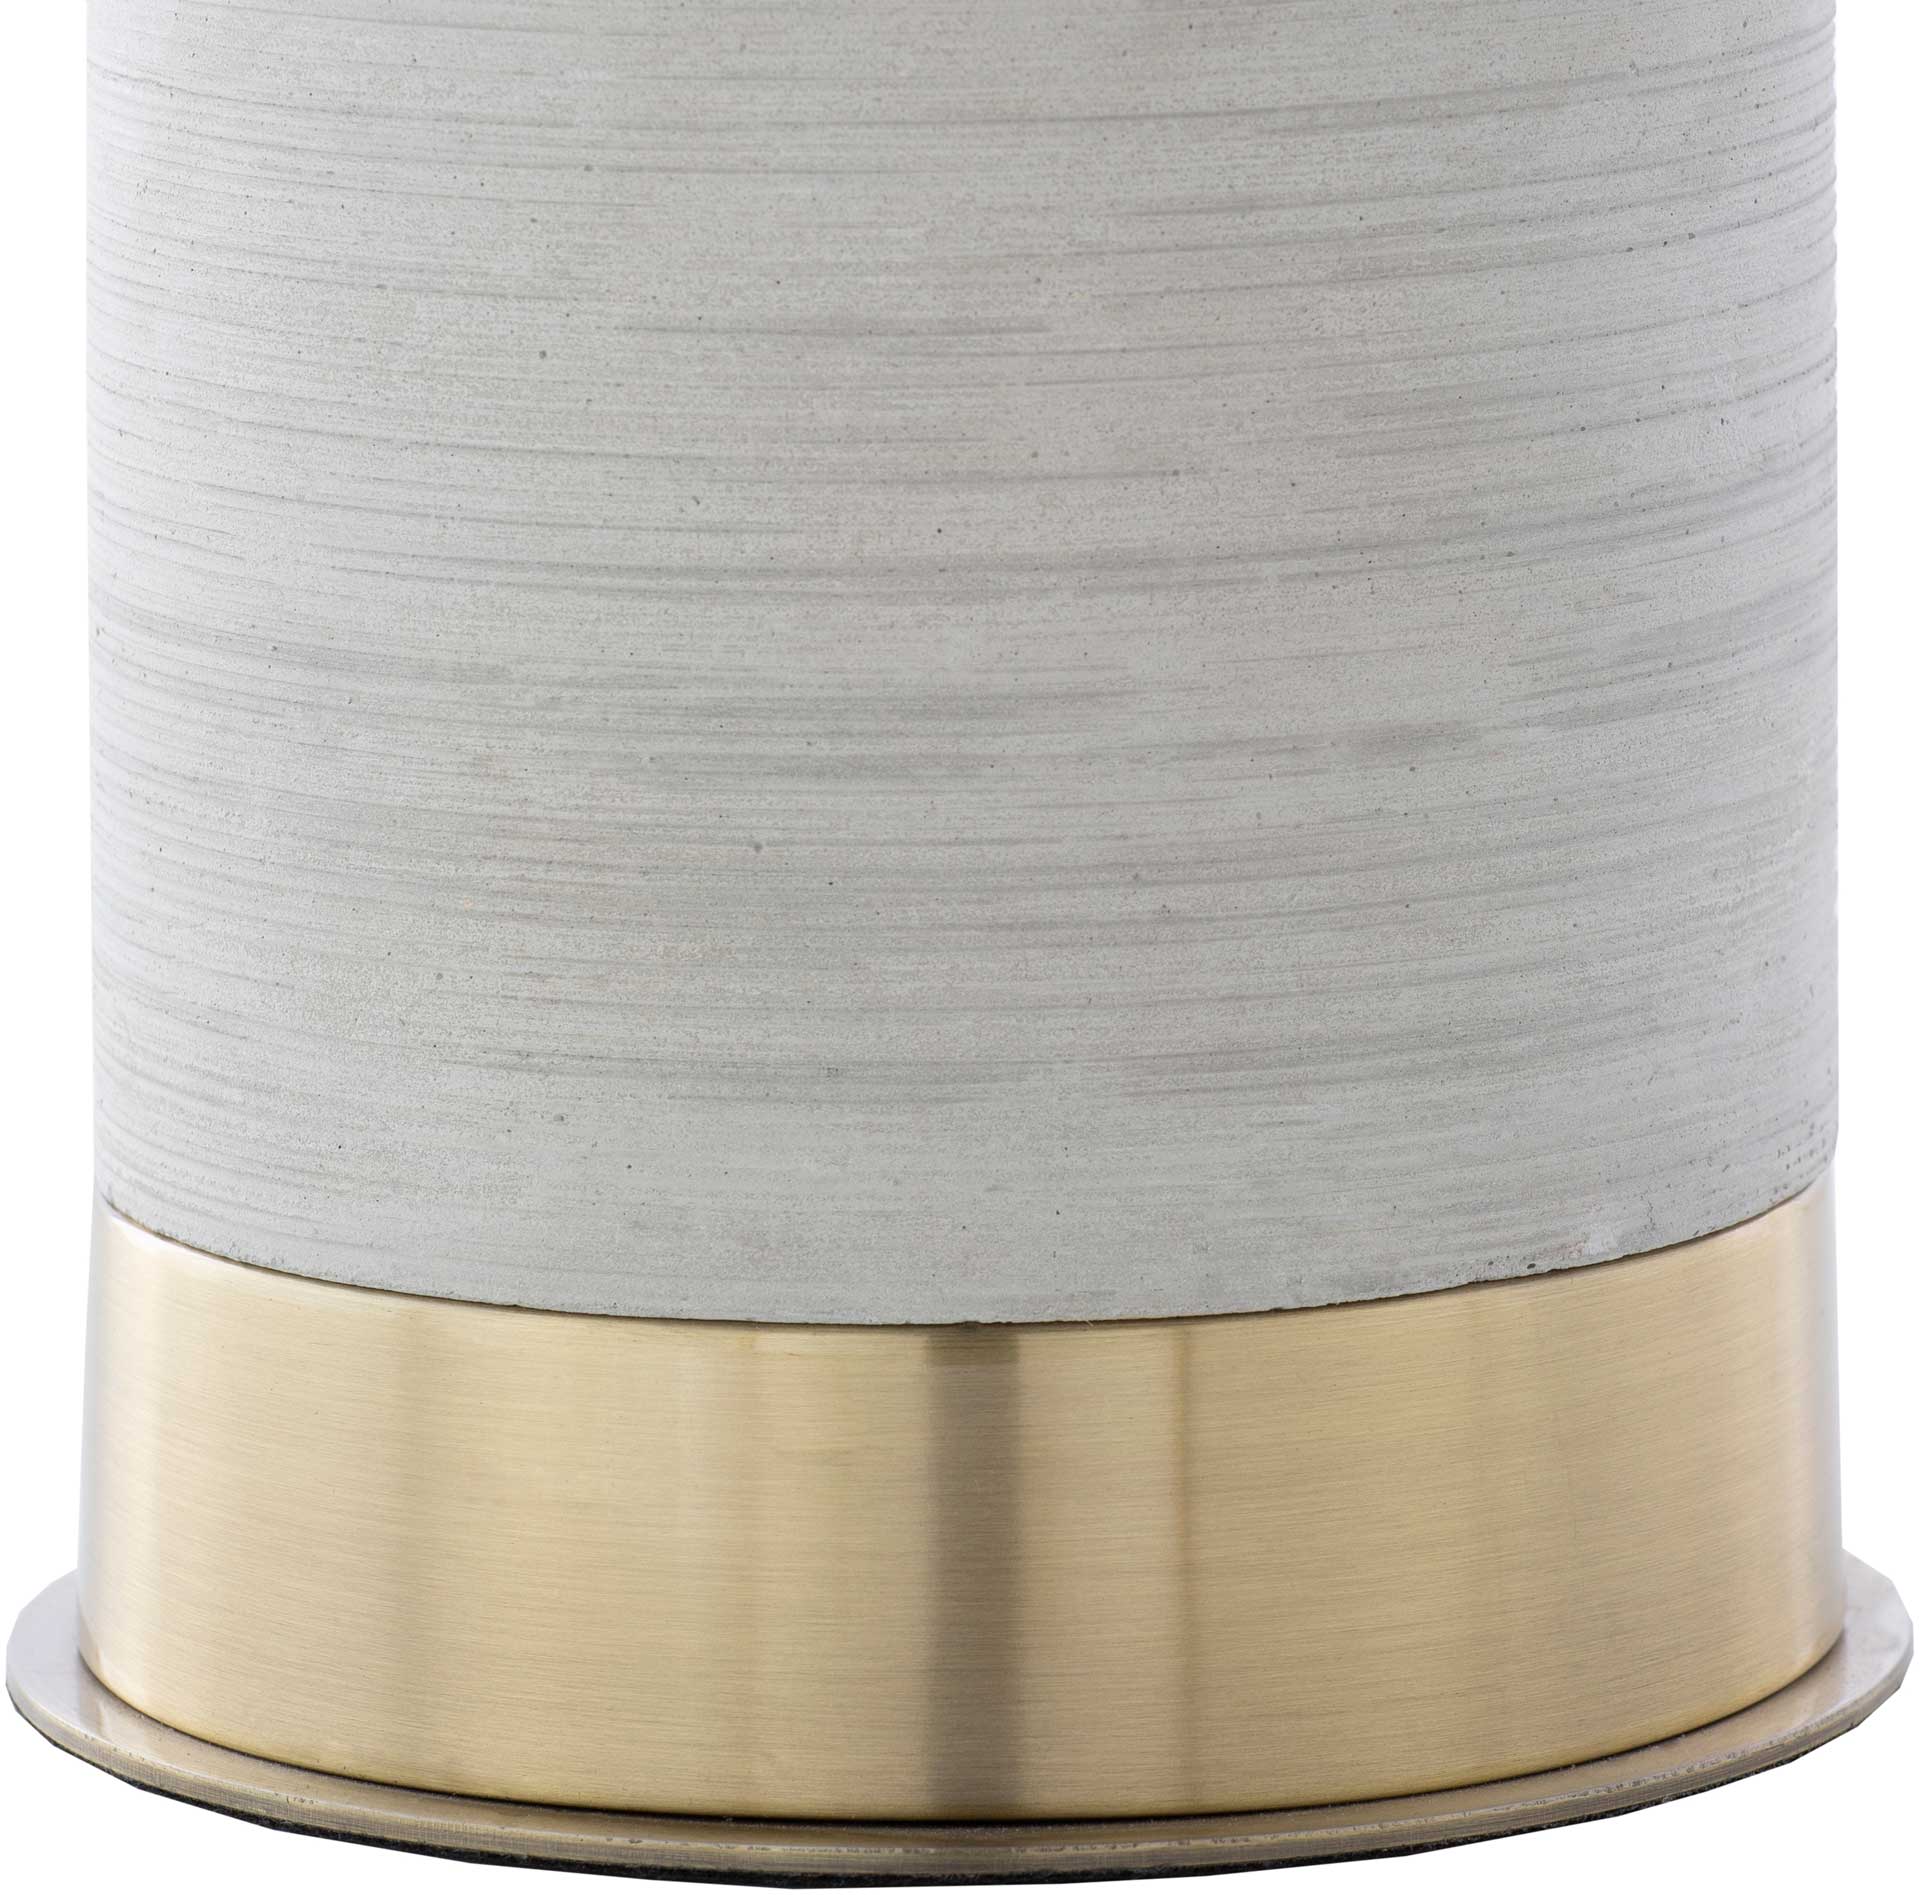 Braden Table Lamp Ivory/Light Gray/White